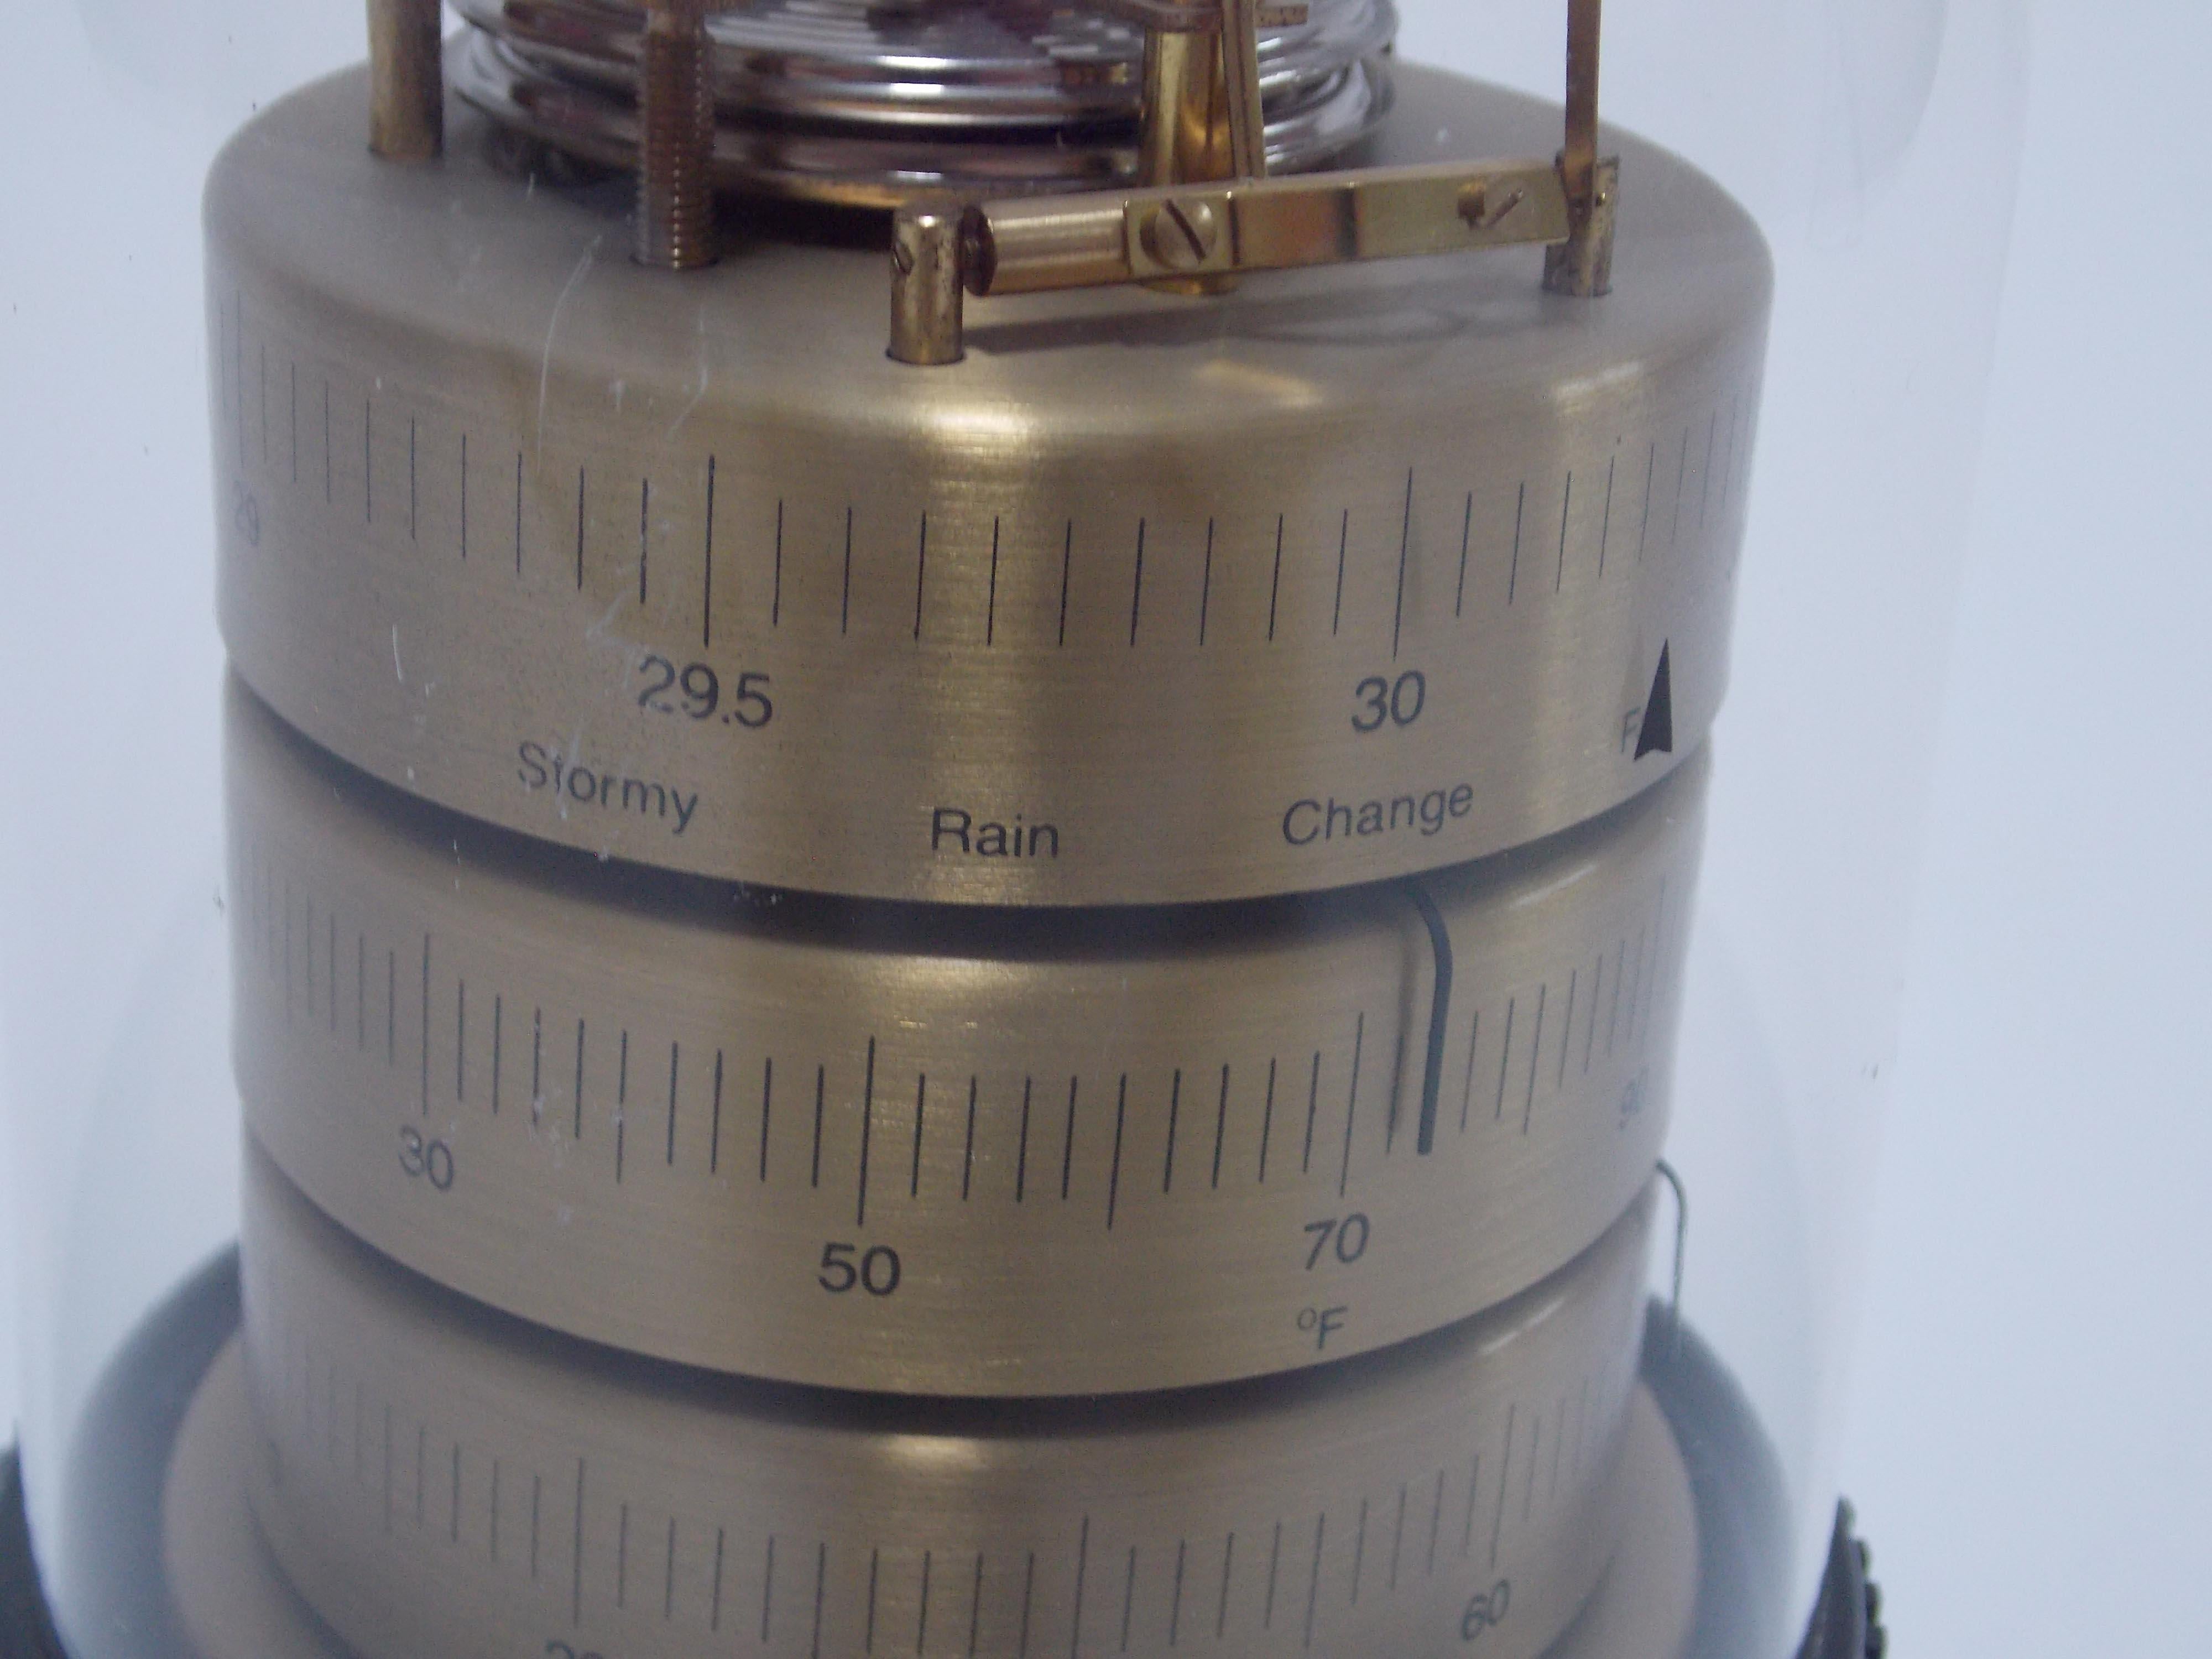 North American Howard Miller Domed Barometer For Sale